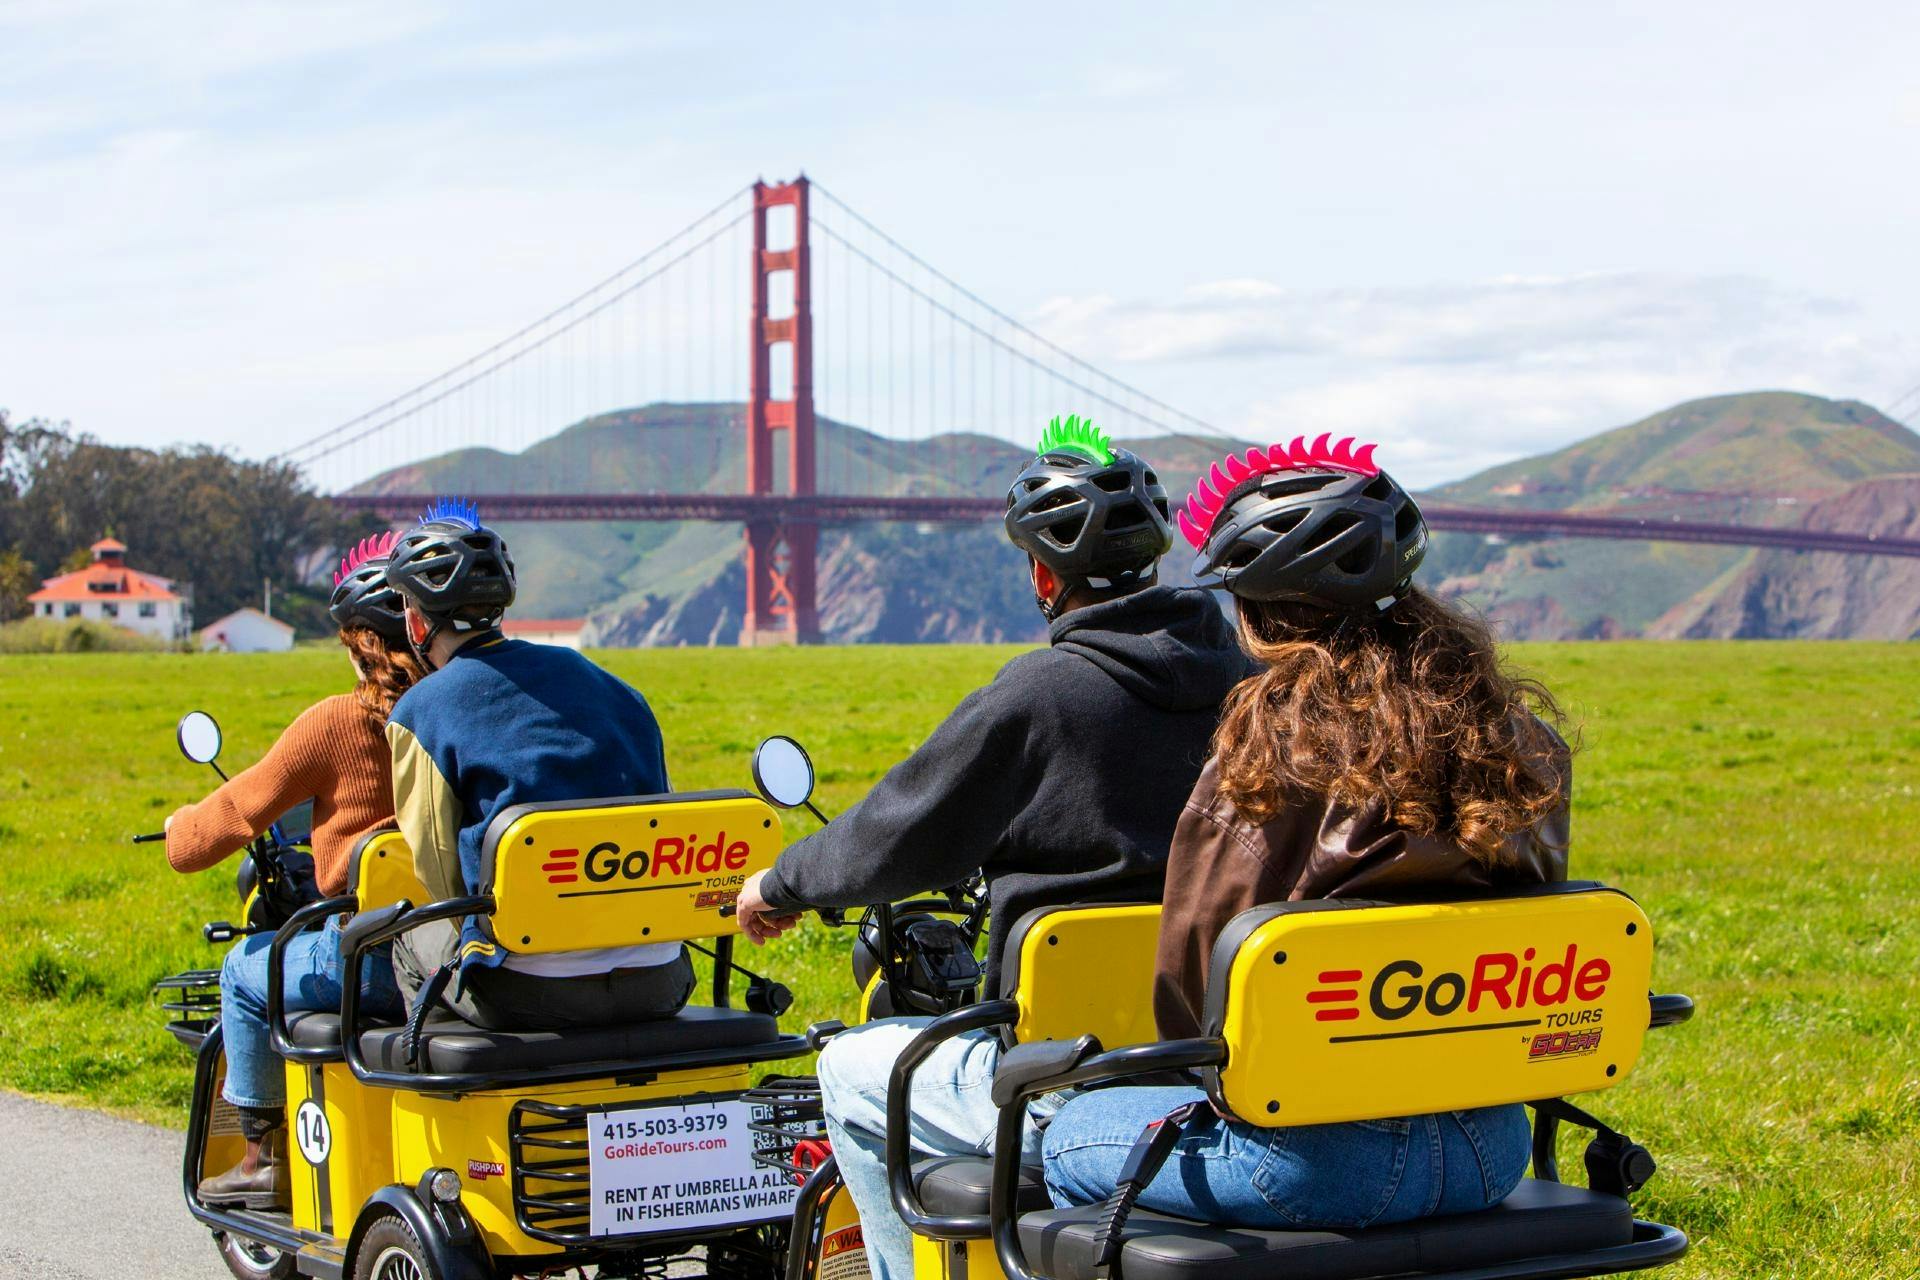 Elektroroller-Verleih mit GPS-geführter Tour zur Golden Gate Bridge